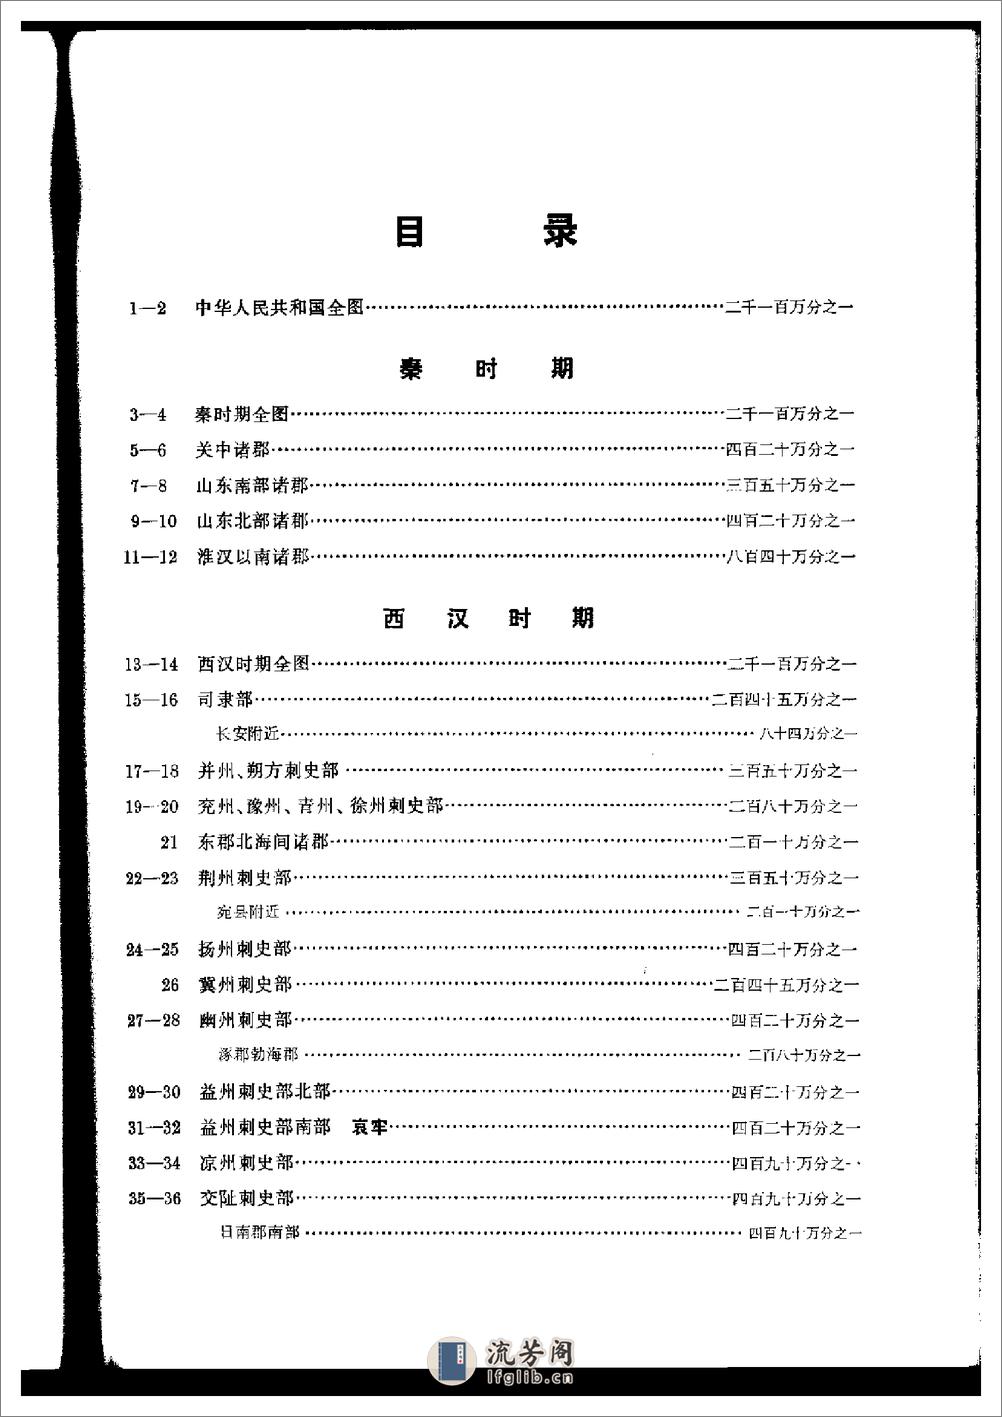 中国历史地图集_第二册(秦汉) - 第10页预览图